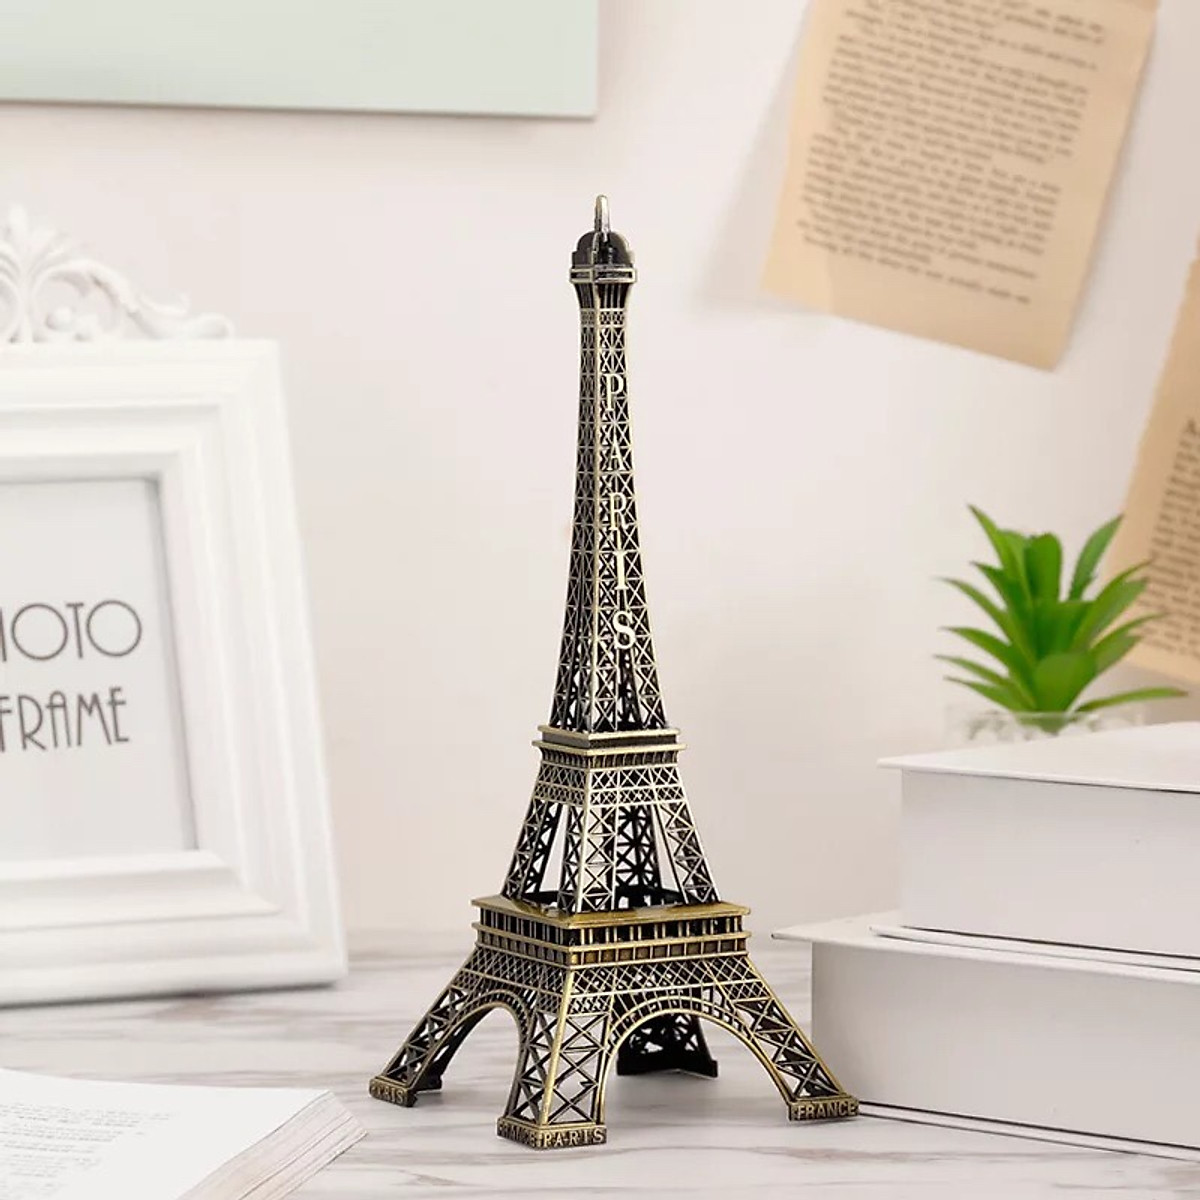 Mua Mô hình Tháp Eiffel bằng Thép Không Gỉ cao 22 Cm tại LATIMAX ...